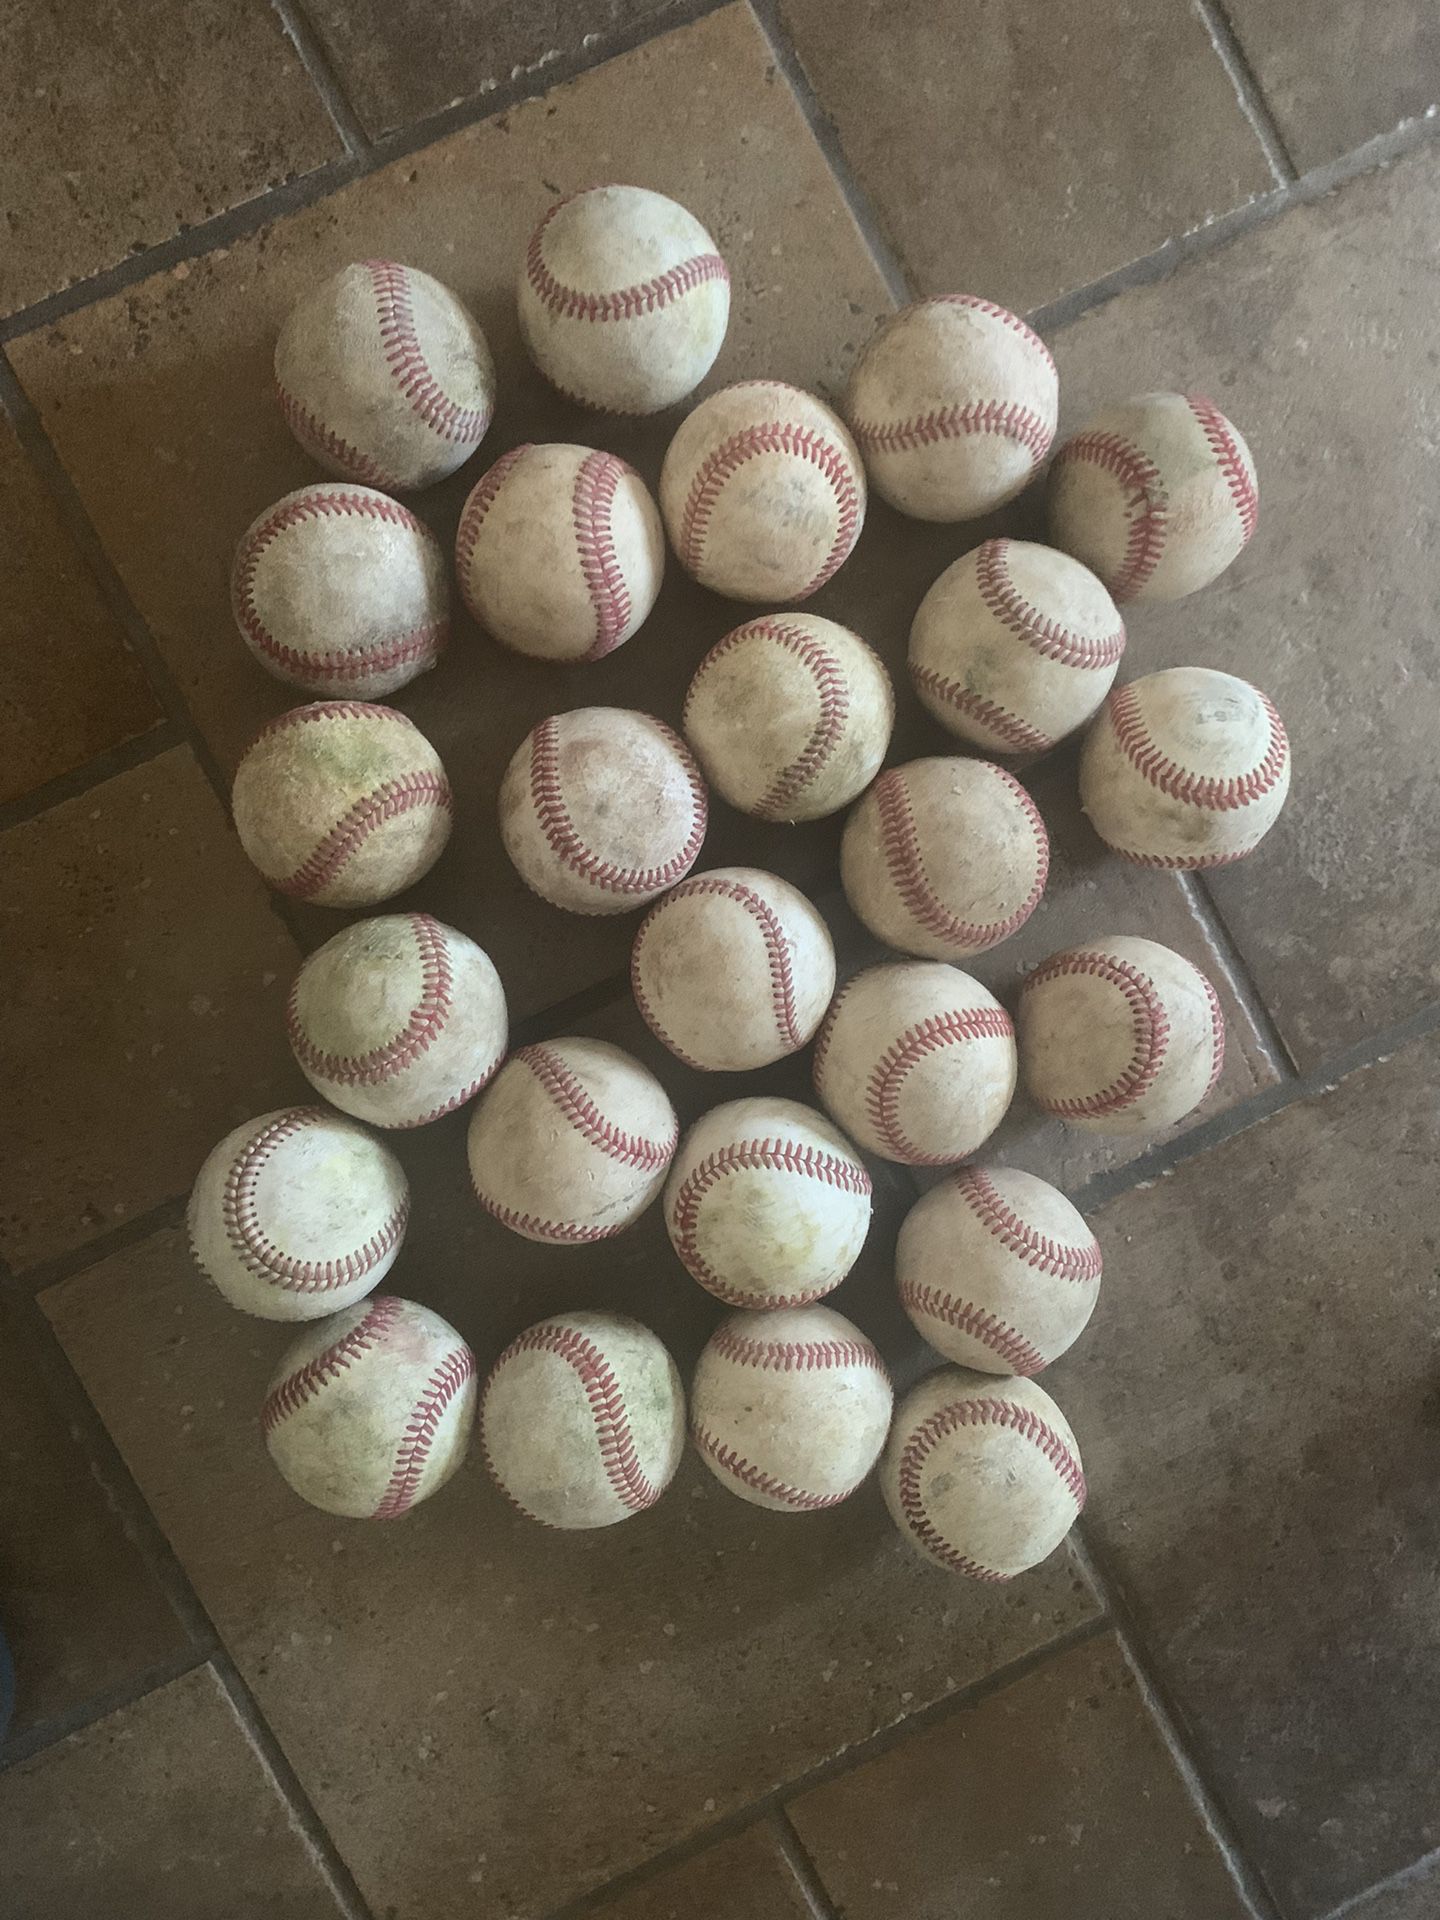 24 Baseballs For $50